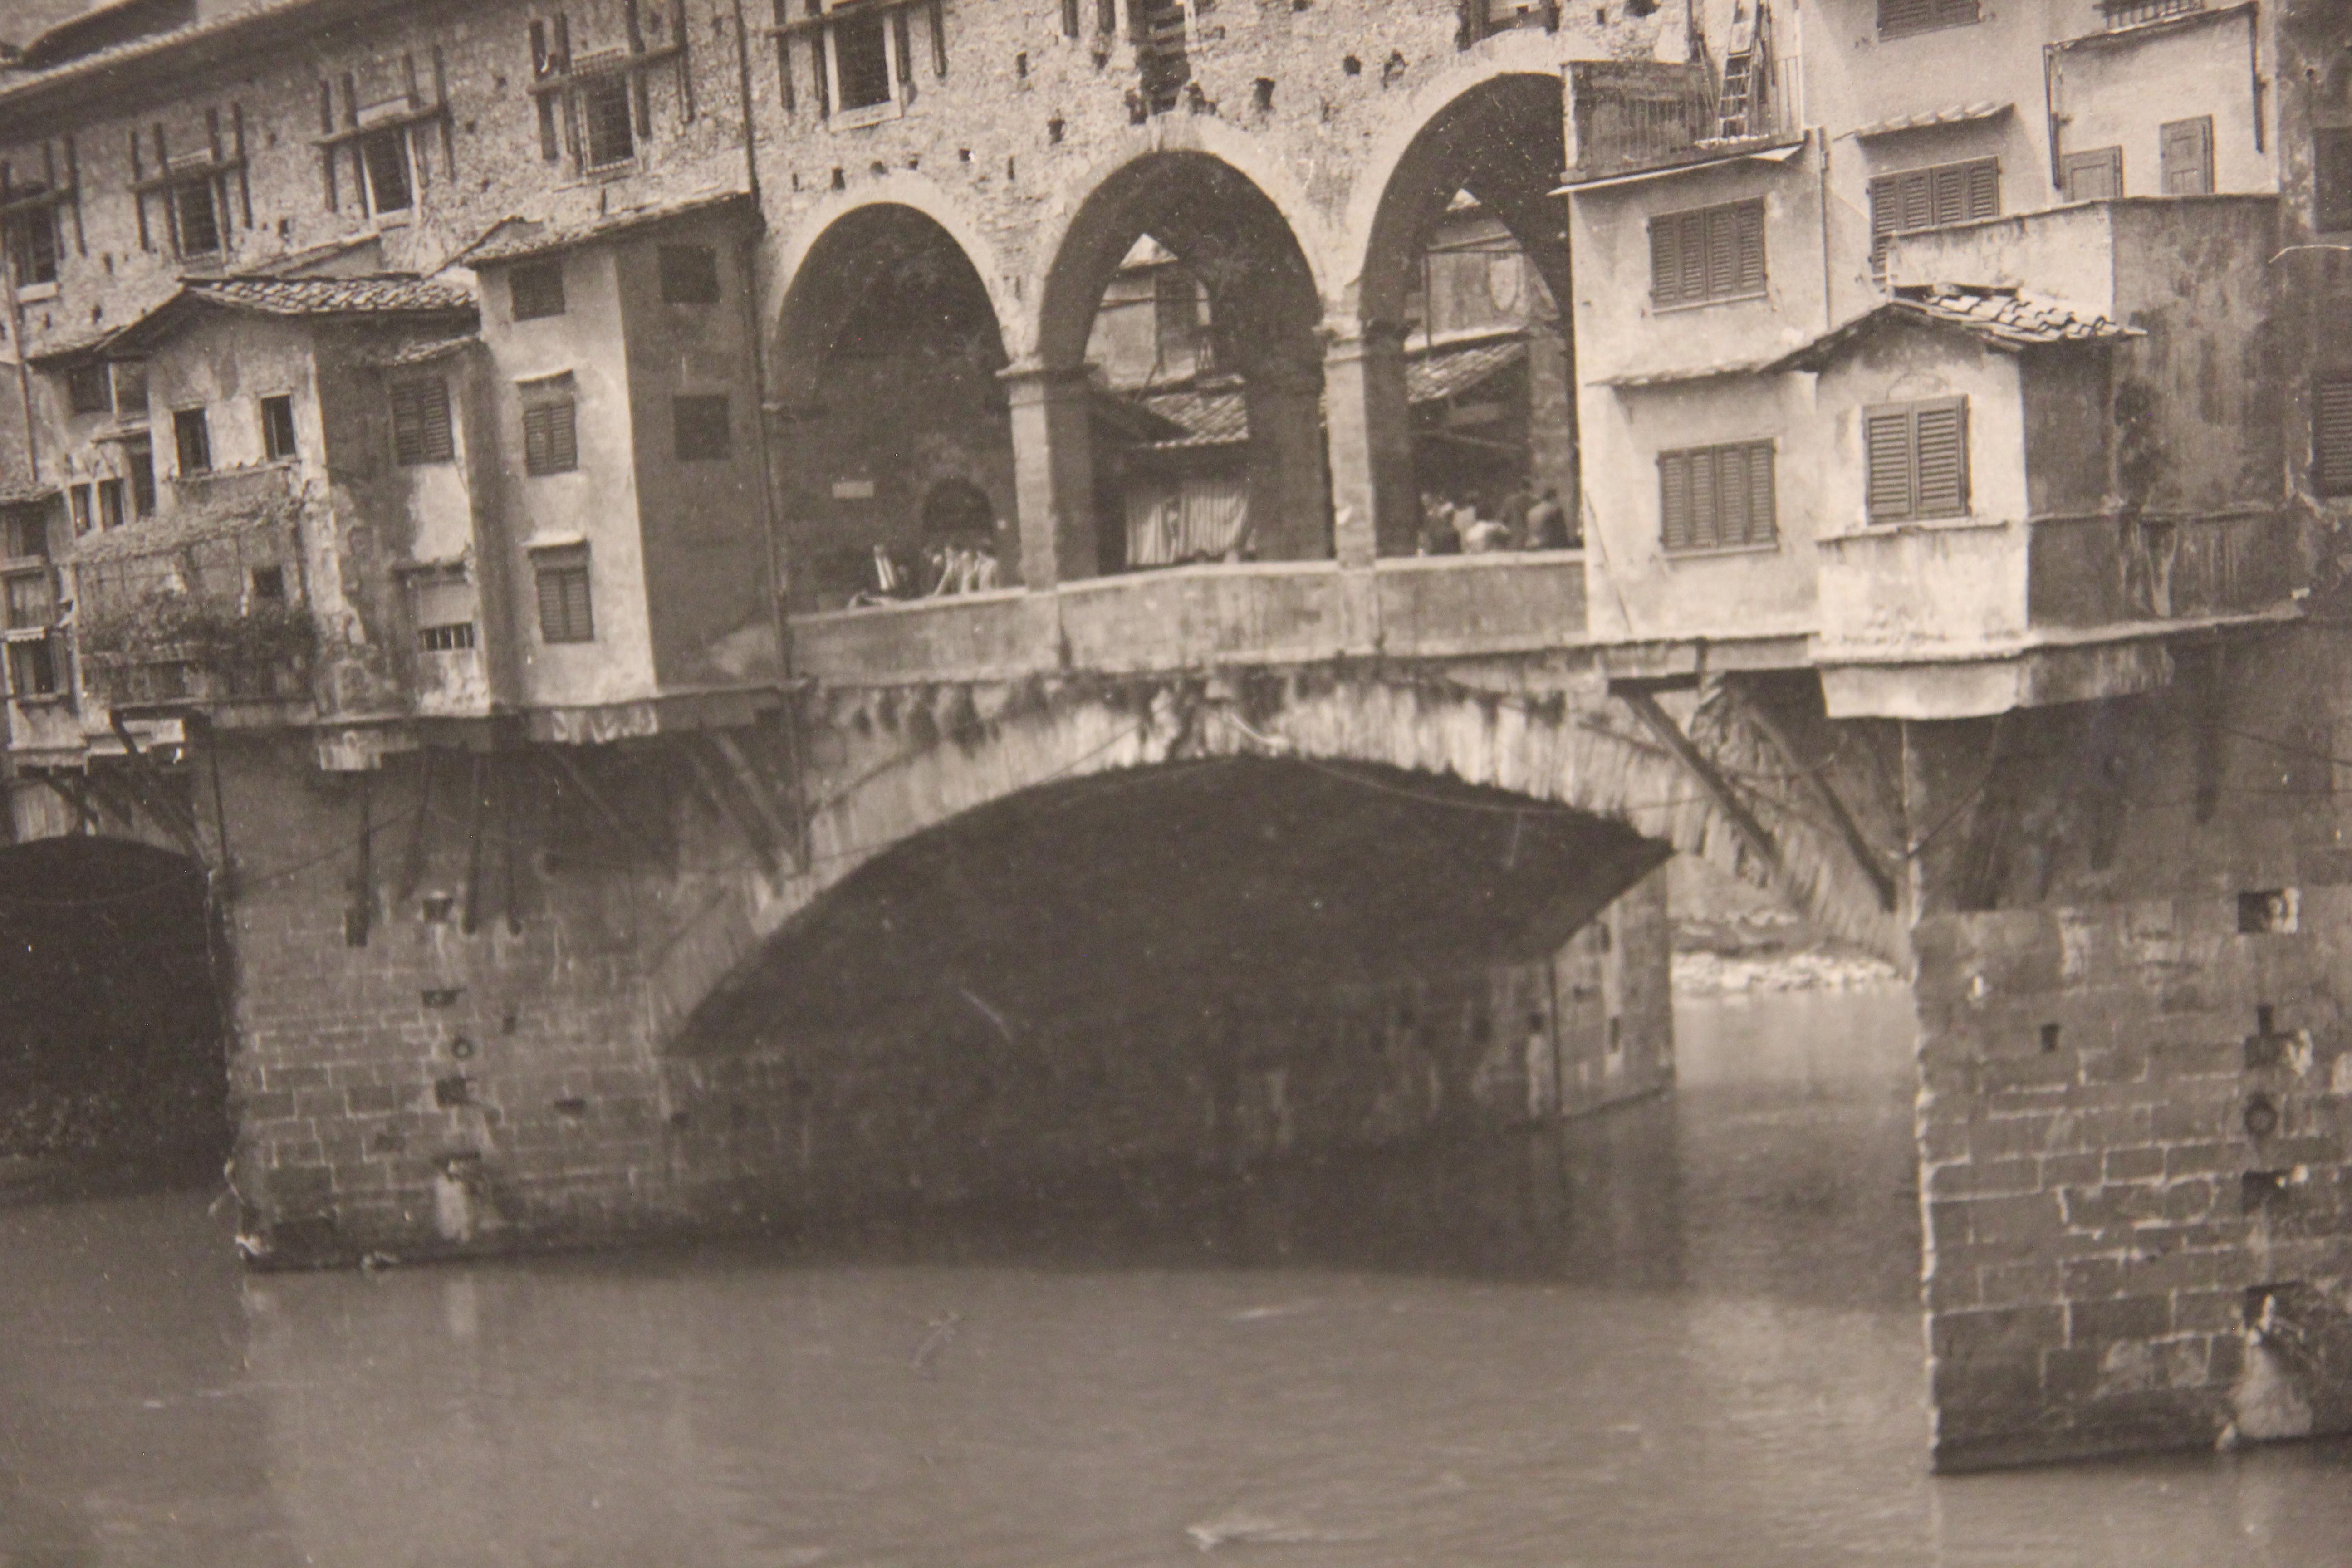 Le Ponte Vecchio est un pont médiéval en pierre à arc segmentaire et à tympan fermé qui enjambe l'Arno, à Florence, en Italie. Elle se distingue par les commerces qui y sont construits, comme c'était le cas autrefois. La photographie est fixée sur